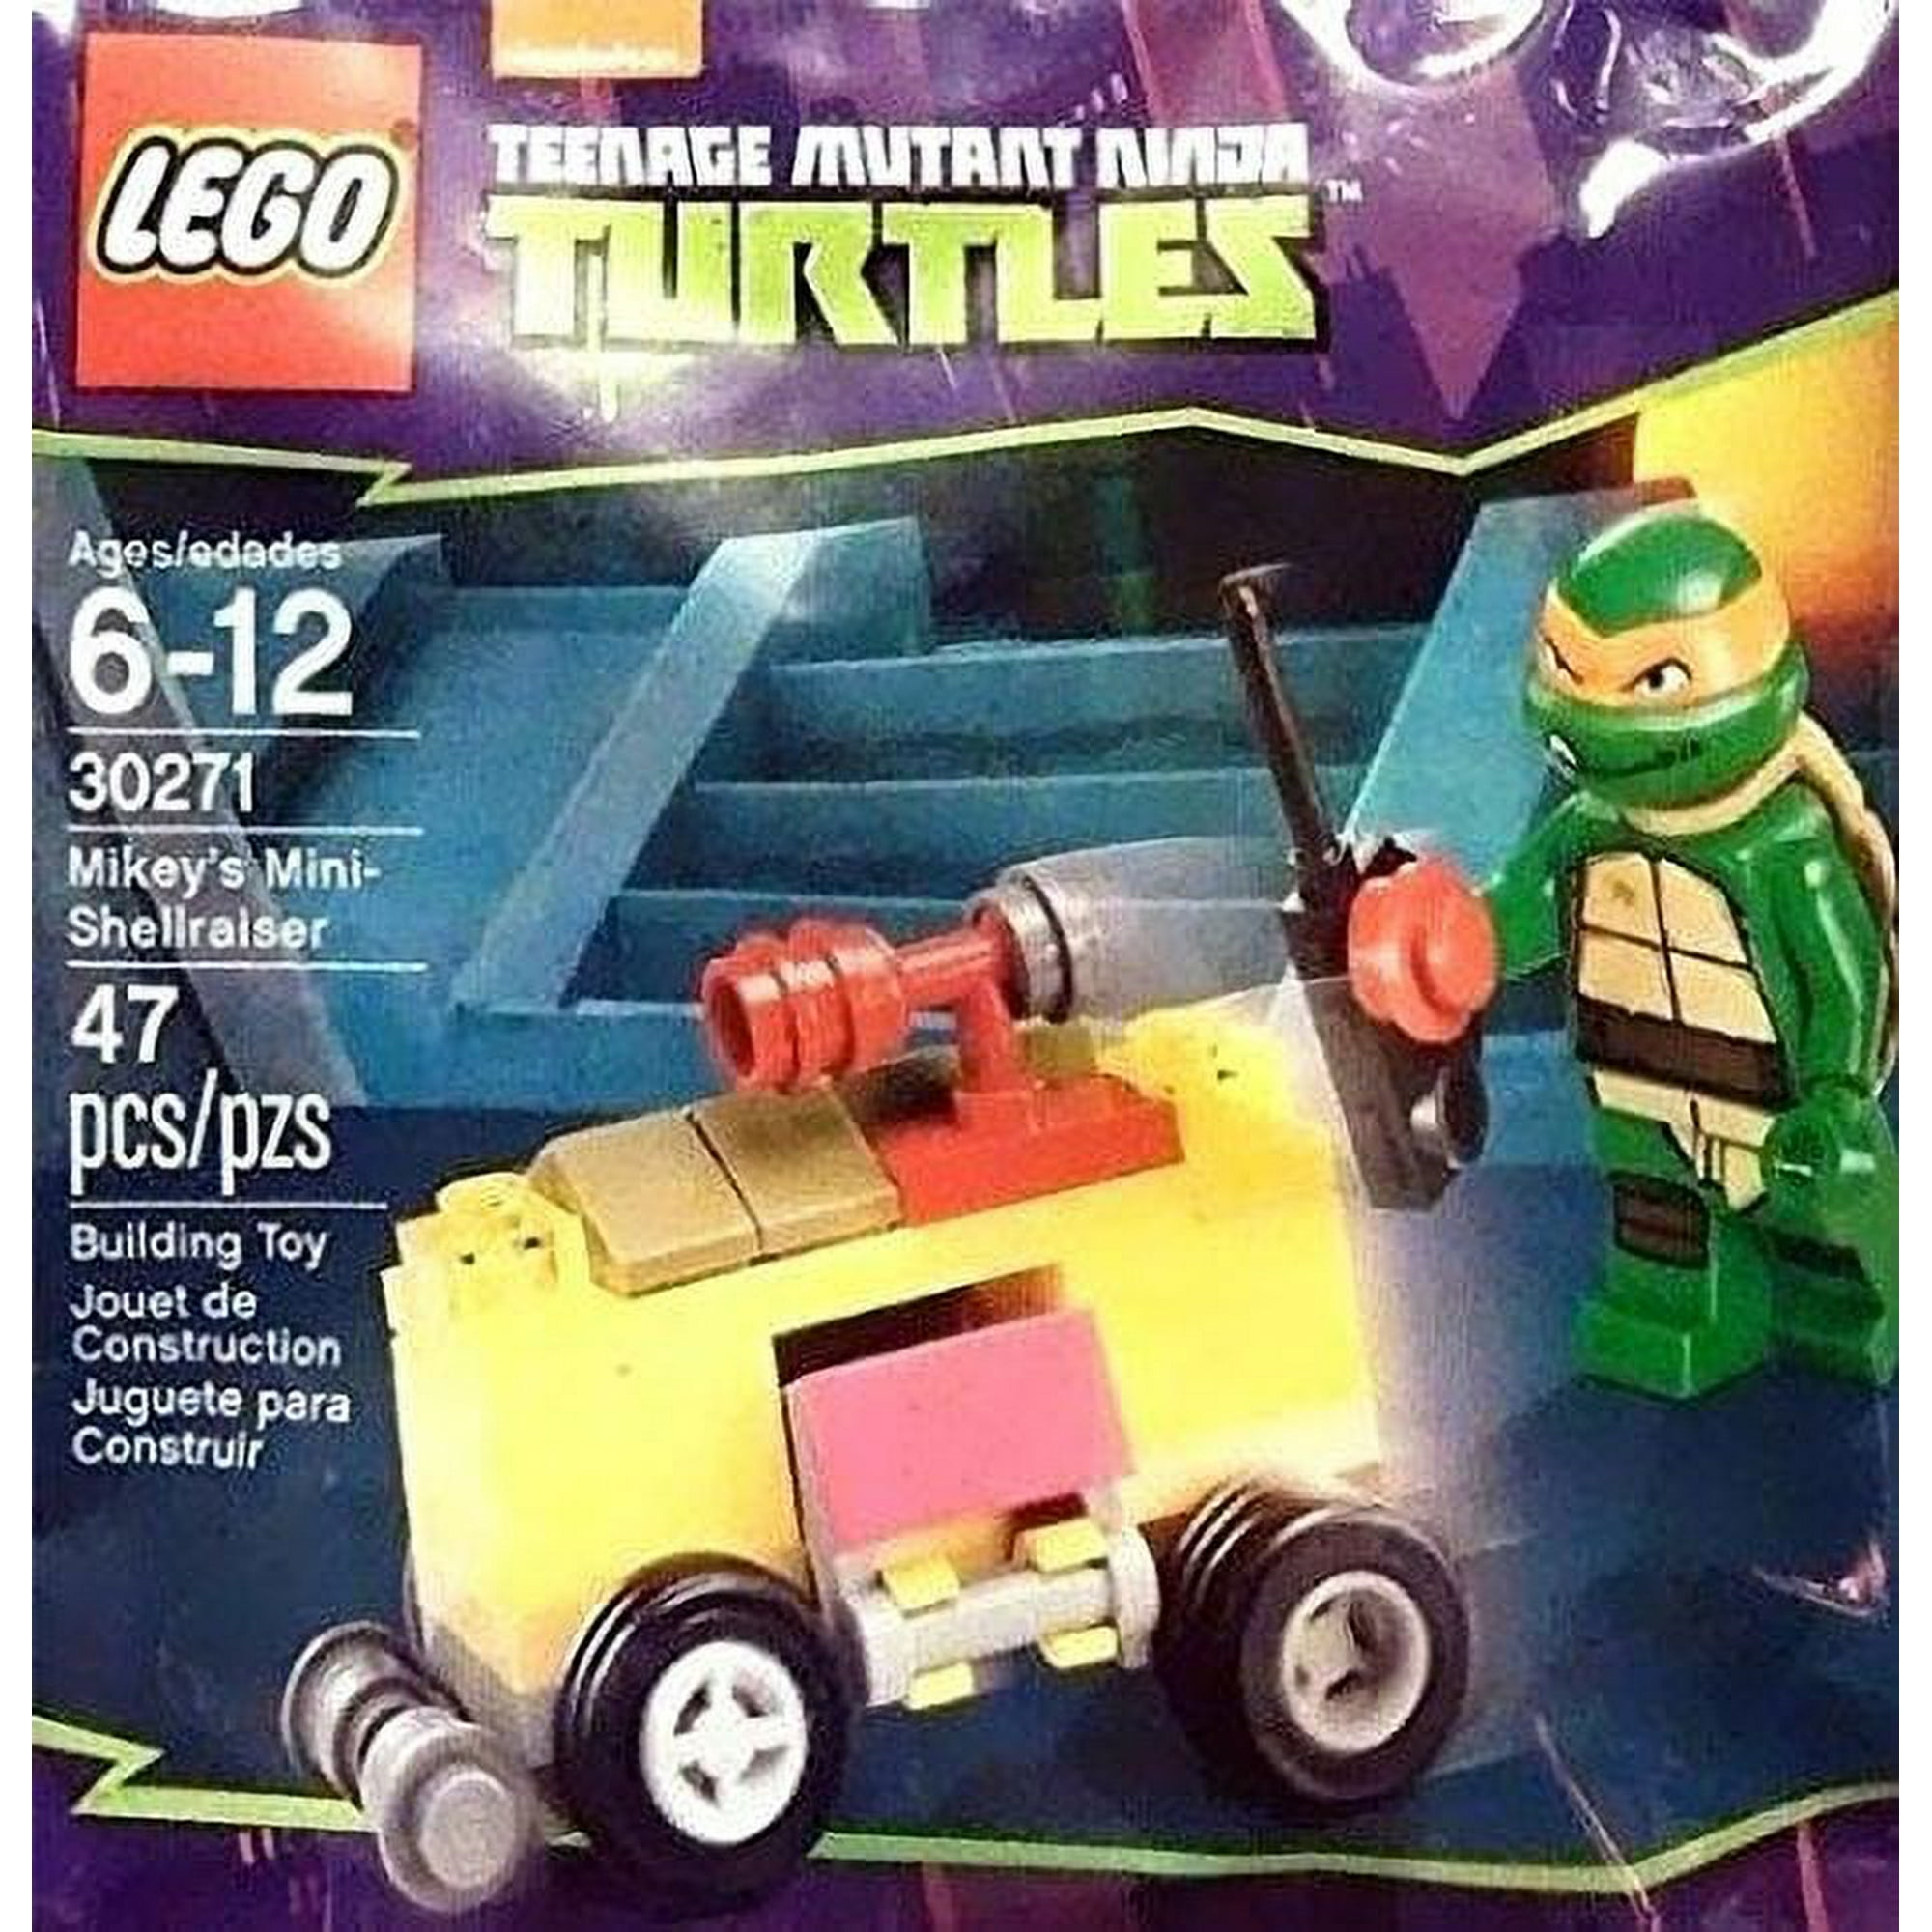 LEGO Teenage Mutant Ninja Turtles Set #30271 Mikey's Mini